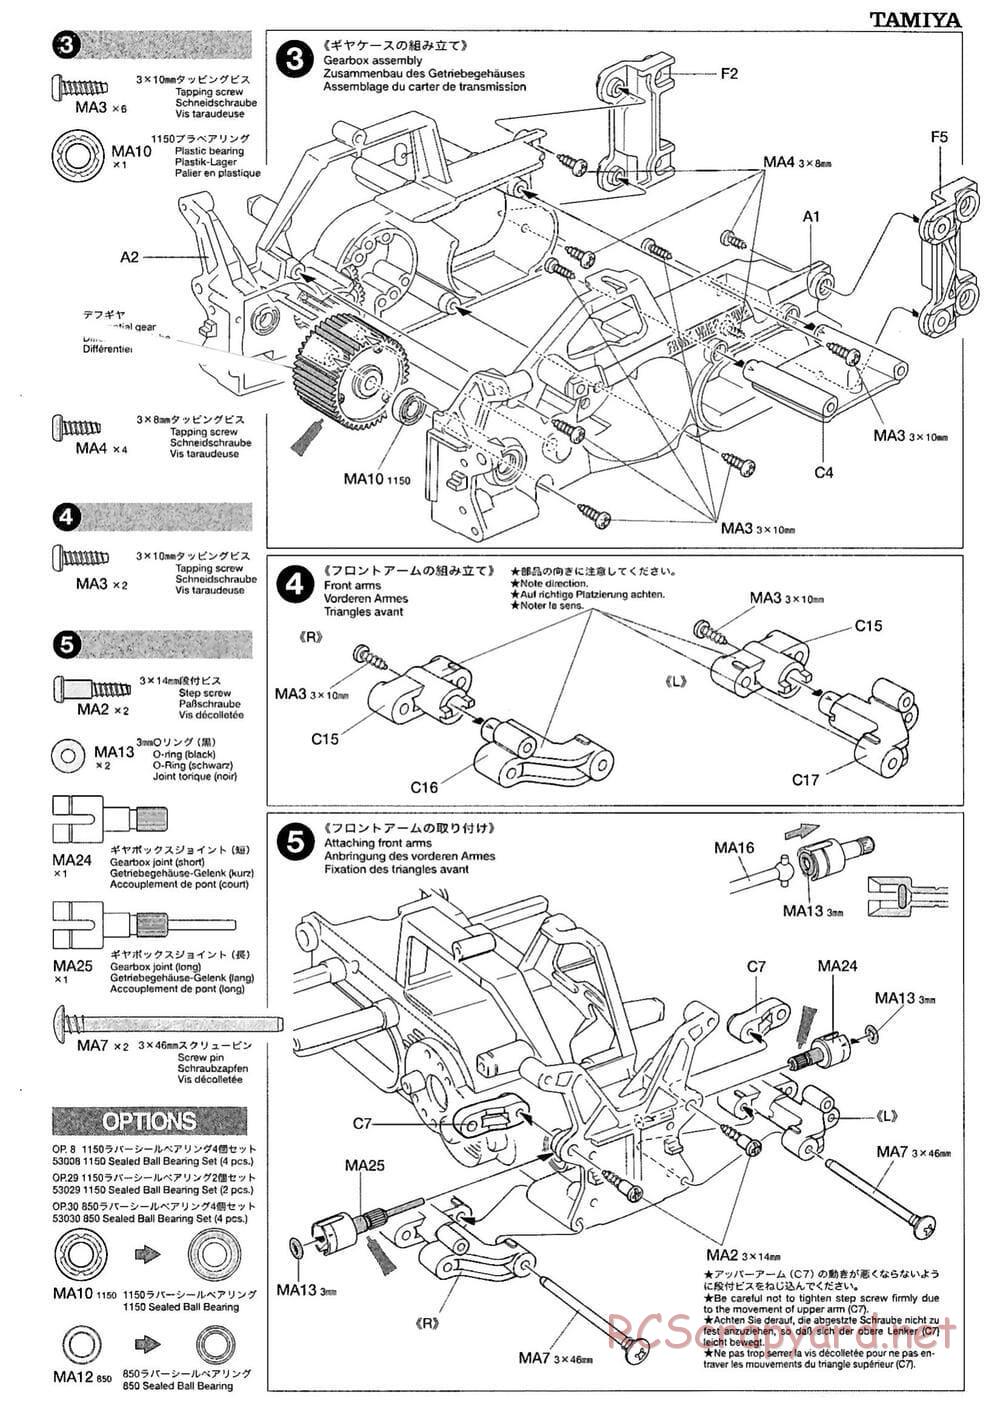 Tamiya - M-03M Chassis - Manual - Page 5